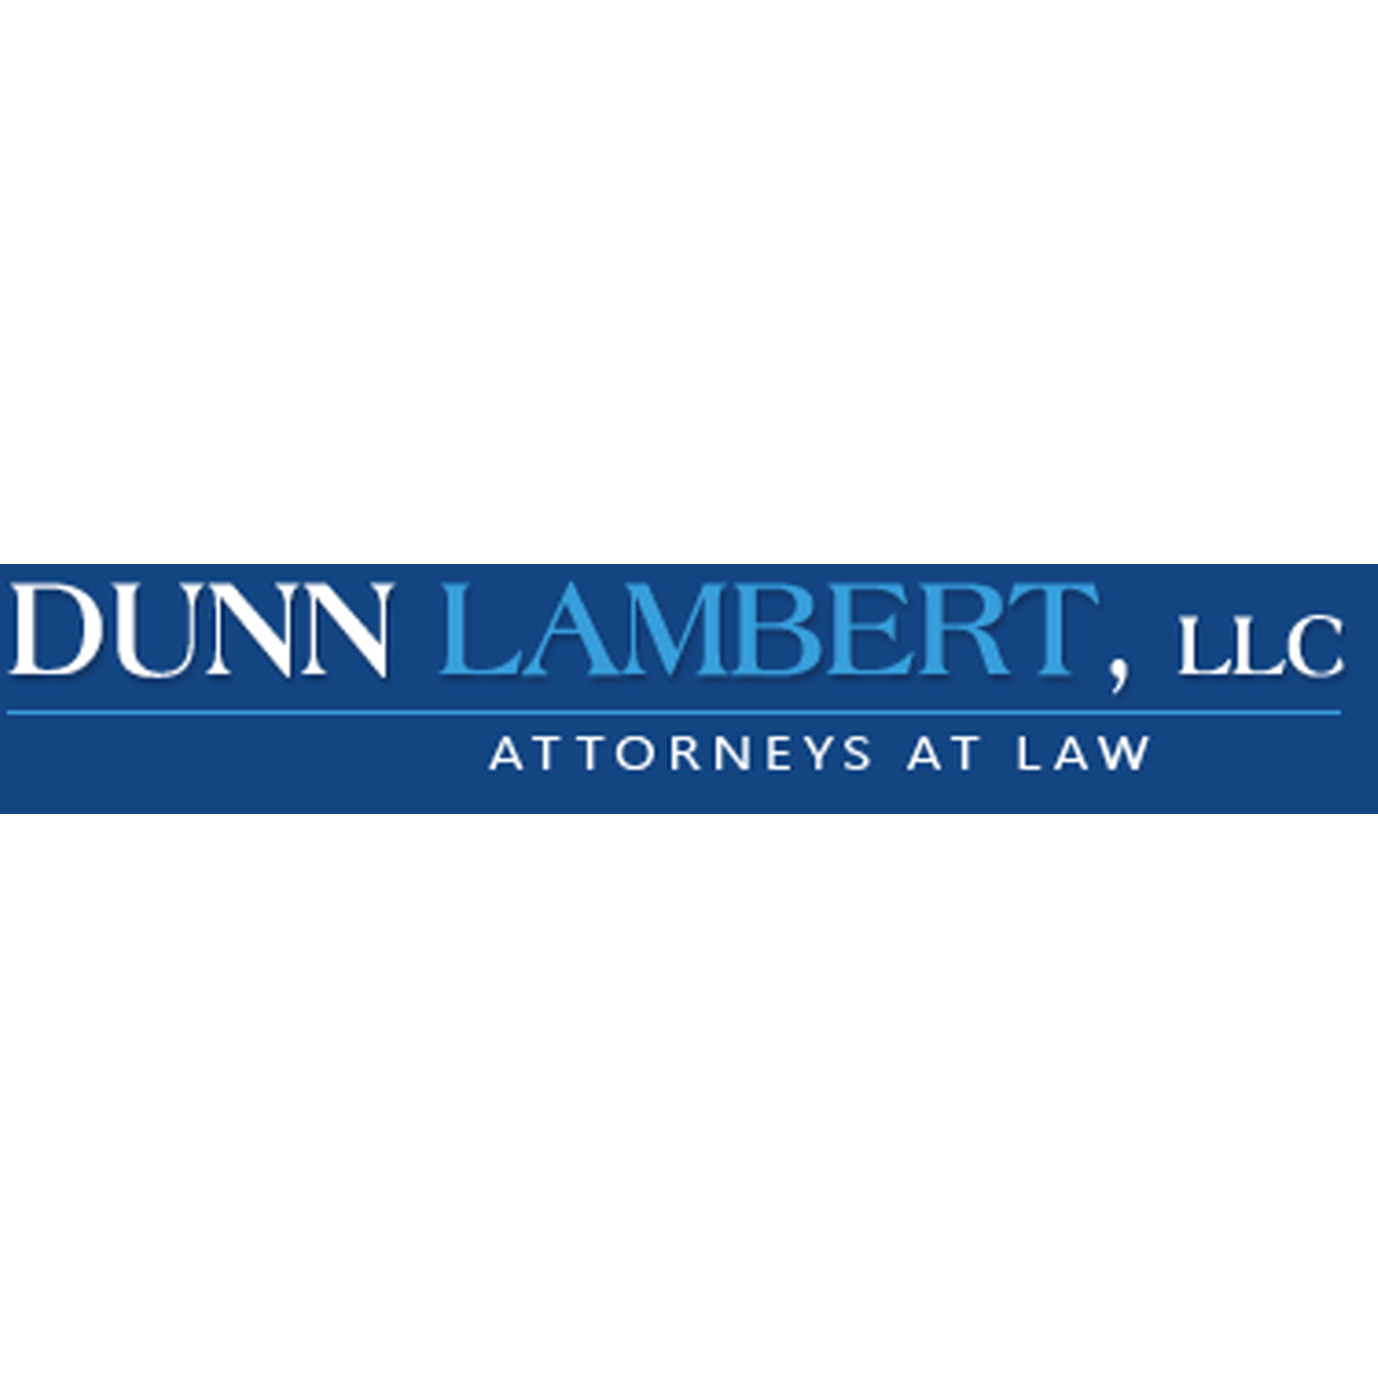 Dunn Lambert, LLC